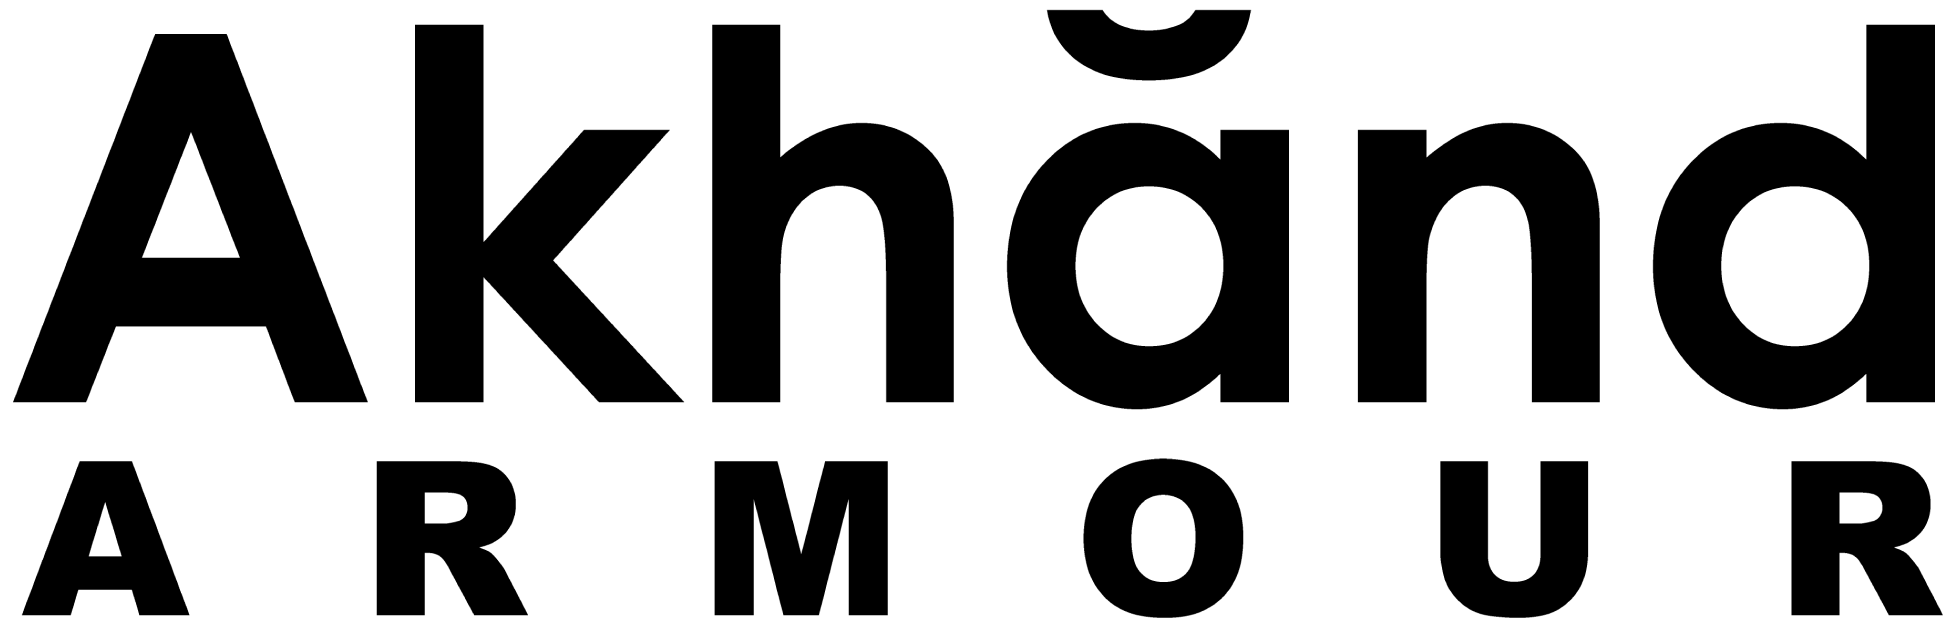 Akhand Armour Logo black transparent